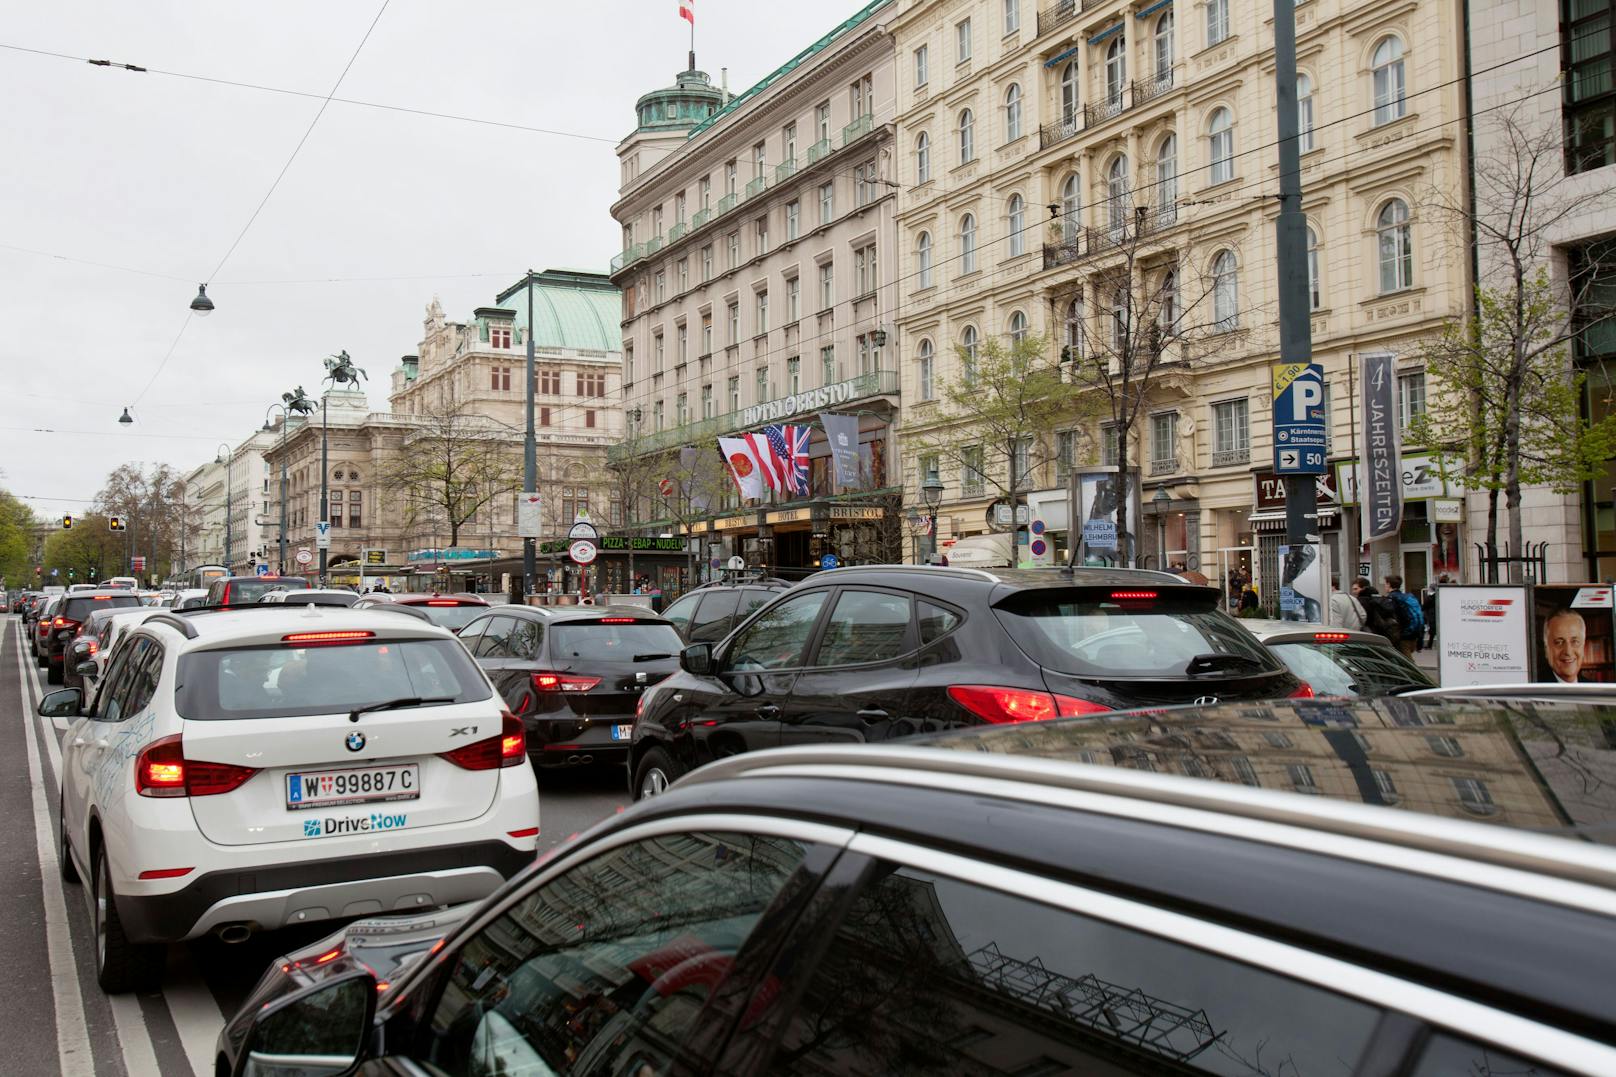 Für eine Verkehrsberuhigung sollen Zufahrten zum Ring in der Wiener Innenstadt videoüberwacht werden. NGOs warnen vor gefährlichen "Überwachungs-Phantasien".